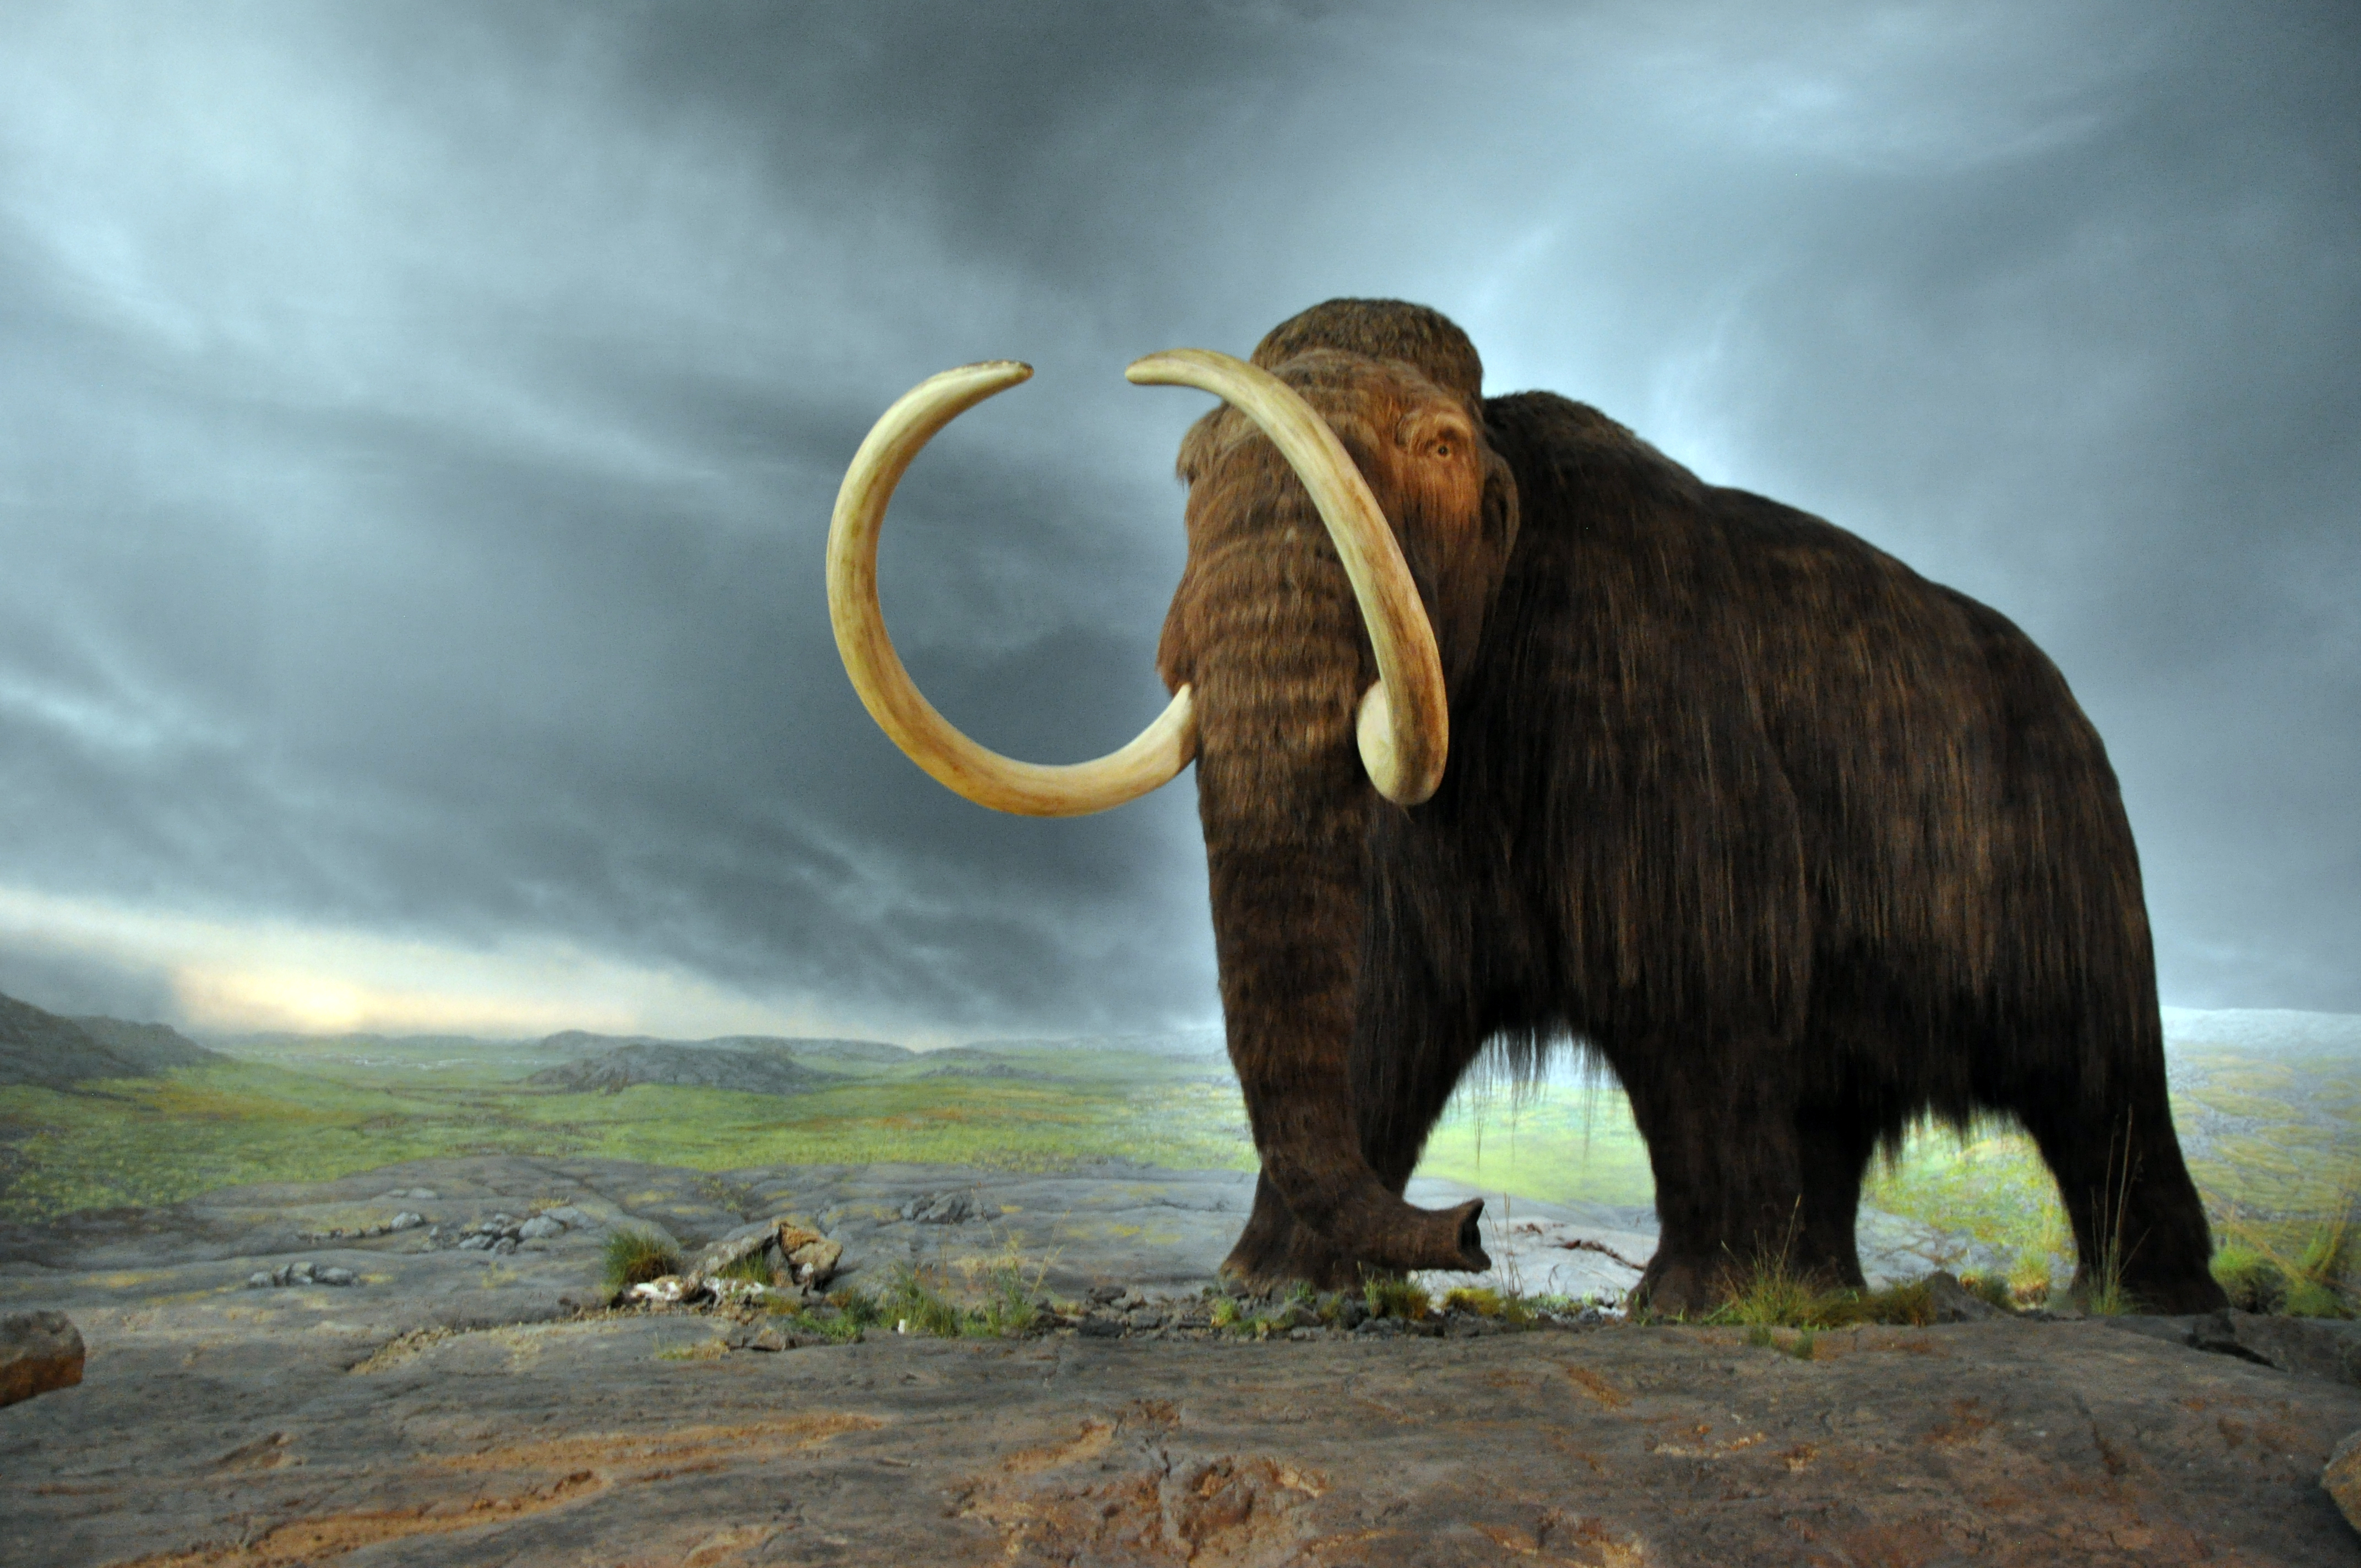 Mamutfasírtot készítettek egy kis mamut DNS alapján, amit elefánt DNS-sel kevertek